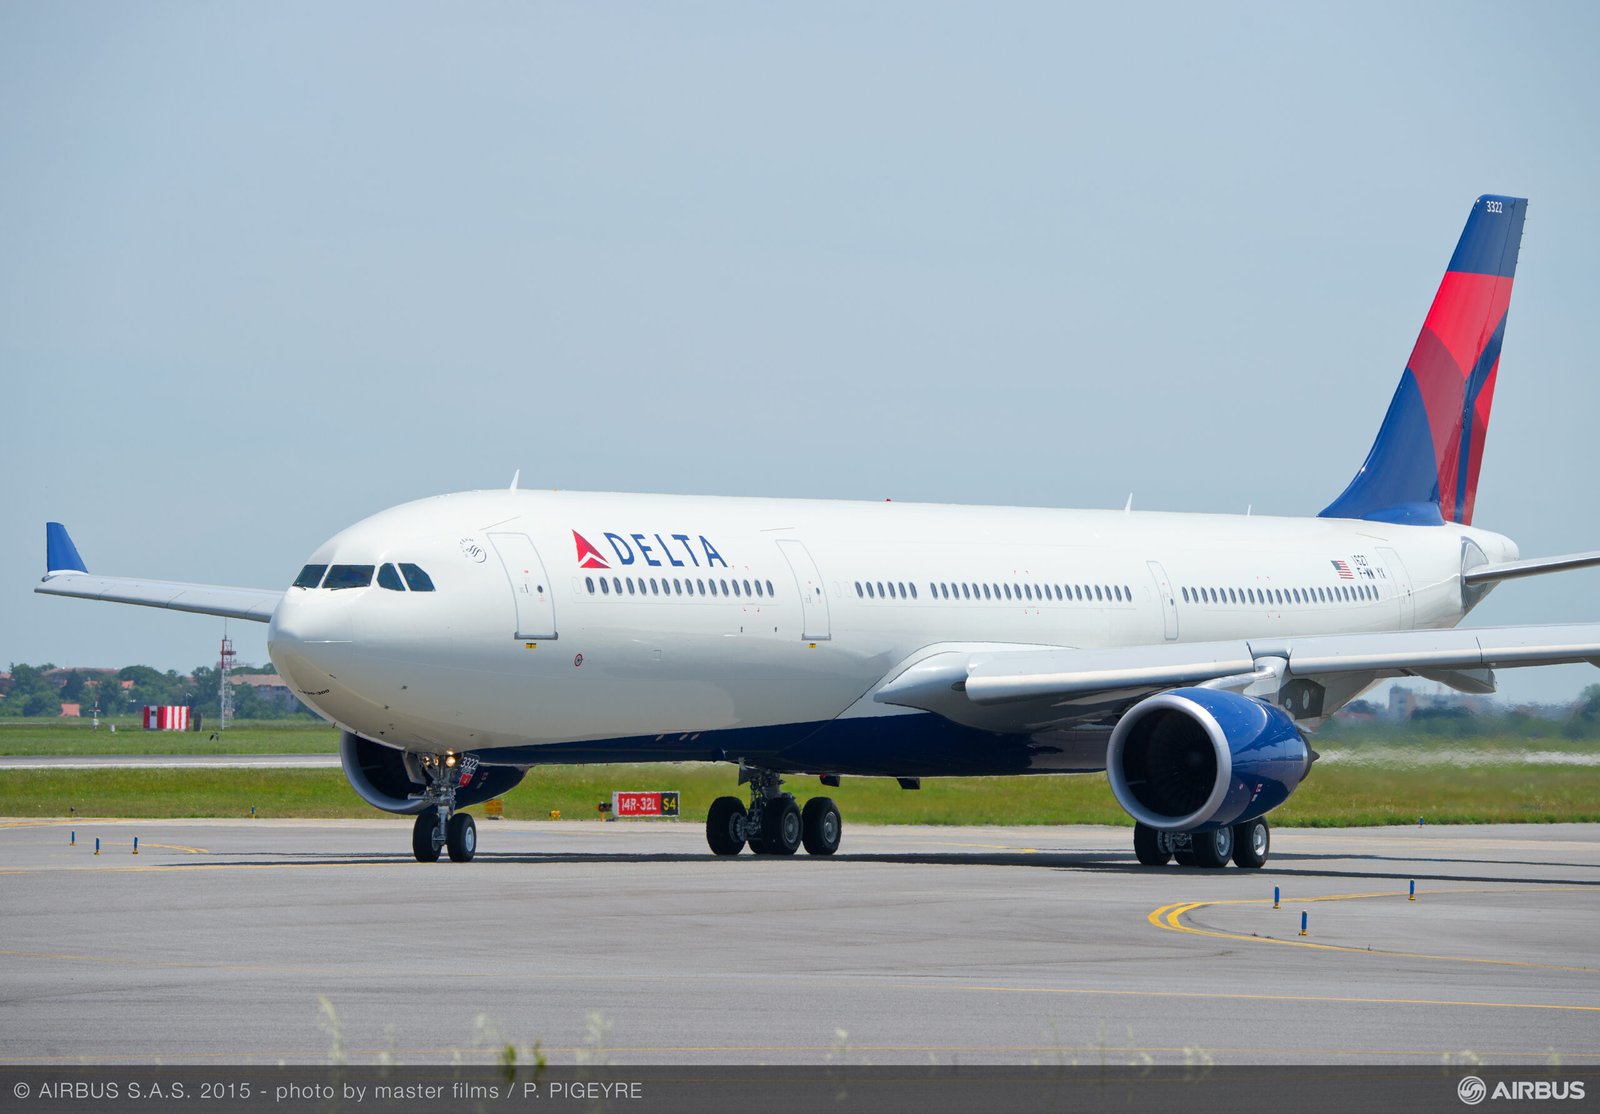 Airbus A330-300 de Delta Air Lines. Foto: Airbus